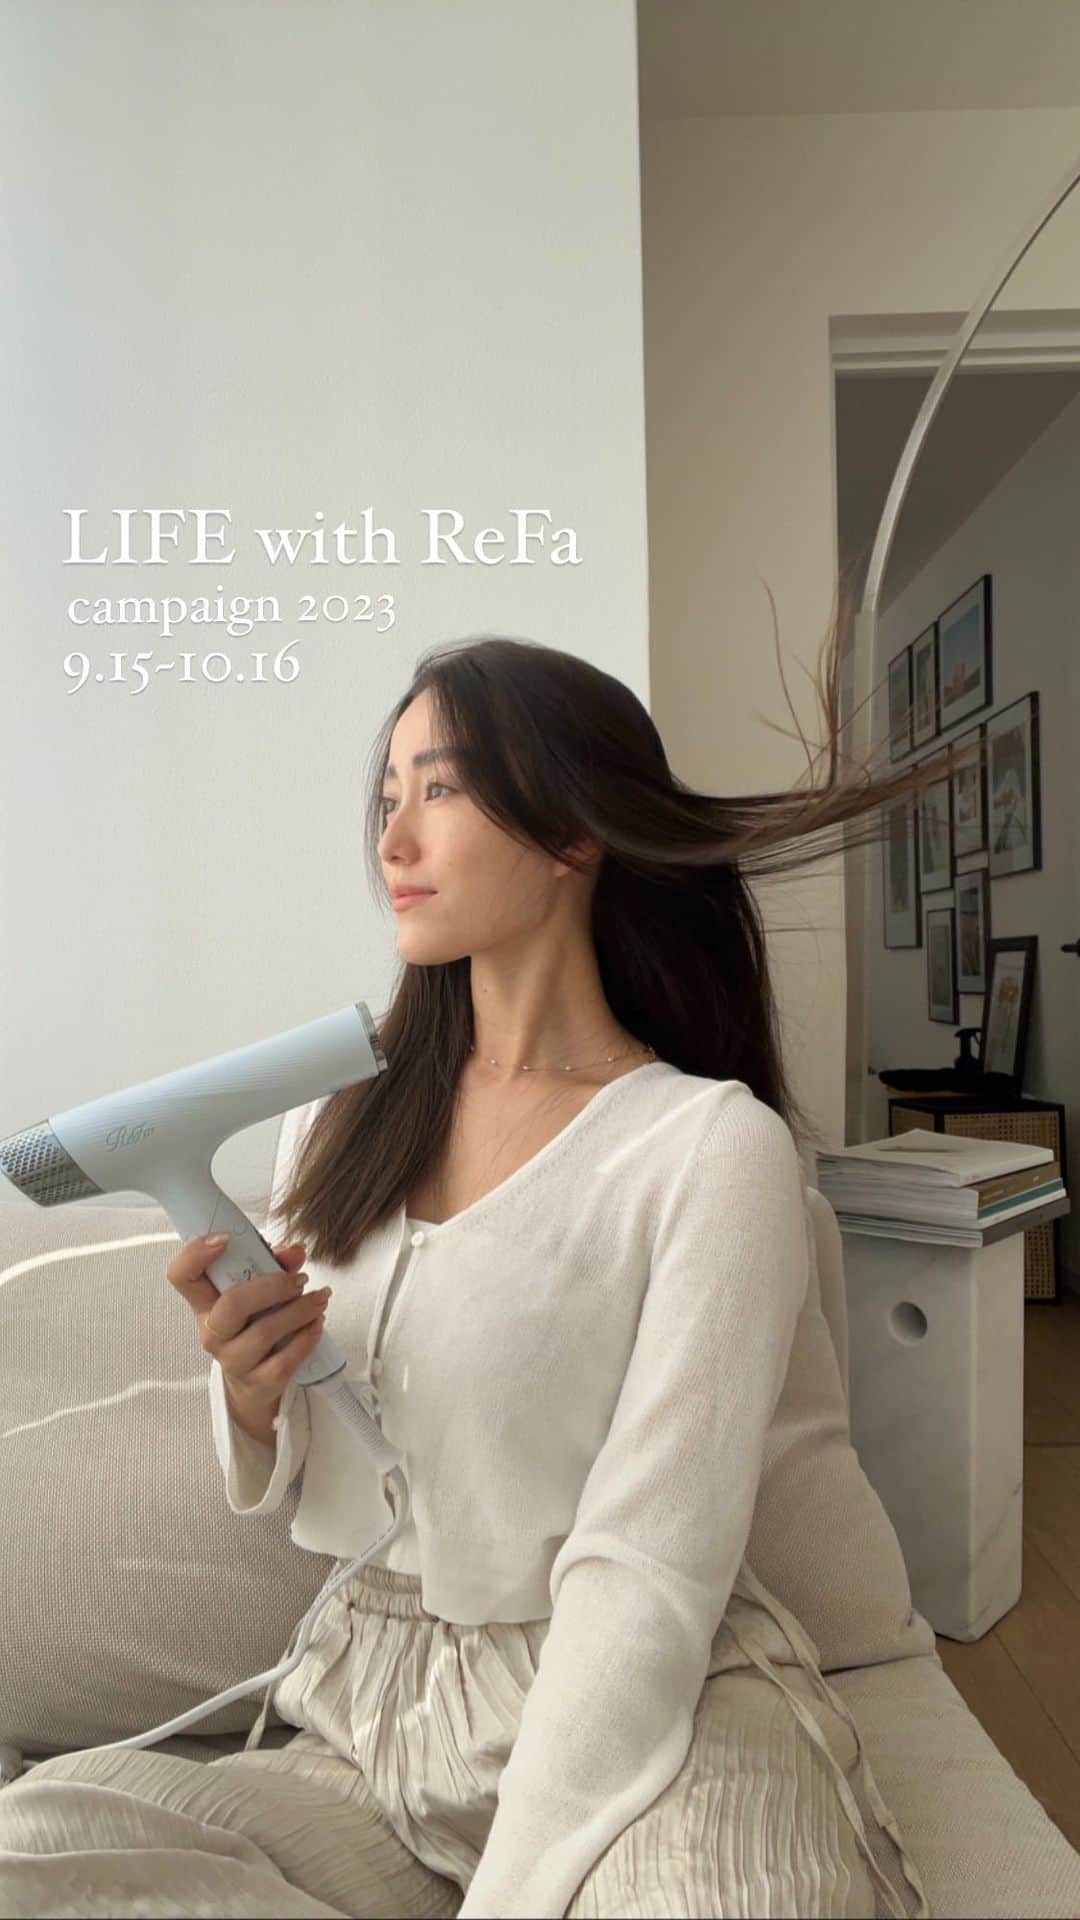 ReFa【MTG公式】のインスタグラム：「「LIFE with ReFaキャンペーン」 ReFaのある毎日をもっと多くの方に楽しんで頂きたい、との想いを込めて。 「LIFE with ReFaキャンペーン」を開催します。  ReFaのアカウントをフォロー＆本投稿いいねで応募完了！ 抽選でリファビューテック ドライヤースマートをプレゼント！ さらに“リファ”または“ドライヤー”を含めたコメントをすると当選確率UP＋DMでヘアケアBOOK（pdf形式）が届きます！是非感想と共にコメントお願いします！  @michellyyy_1017  髪を乾かすというマイナスな印象(=時間がかかる、パサつく、疲れる)がReFaのドライヤーのおかげで、スキンケアと同じように毎日の大切な工程に✨速く、美しく、そして楽しく。日々の自信に繋がるコンパクトでスマートなアイテム🫧  たくさんのいいねとコメントをお待ちしております。  【応募方法】 ①ReFa公式アカウント(@refa_mtg)をフォロー！ ②9/15の投稿にいいね ///“リファ”または“ドライヤー”を含んだ感想を9/15の投稿にコメントすると当選確率UP///  【応募期間】 2023年9月15日（金）から 2023年10月16日（月）23:59まで  【商品】 ・リファビューテック ドライヤースマート（ホワイト）  【当選発表】 当選者には2023年11月上旬にInstagram DMにてご連絡いたします。  【注意事項】 偽アカウントにご注意ください。/プロフィールを非公開設定にされている方は、応募対象外になりますのでご注意ください。/当選賞品はお選びいただけません。あらかじめご了承ください。/当選発表は当選者へのDMをもって代えさせていただきます。公式アカウントを必ずフォローしてください。/当選通知受信後、指定の期限までにご返信ください。/賞品の発送は日本国内に限らせていただきます。/当選した権利を第三者へ譲渡、換金することはできません。また、ほかの賞品との交換もできません。/本キャンペーンは、Instagramによる主催ではありません。株式会社MTGによる提供です。また、キャンペーンの内容は予告なく変更する場合がございますのであらかじめご了承ください。  #リファ #ReFa #ReFaタイム #プレゼントキャンペーン #キャンペーン実施中」